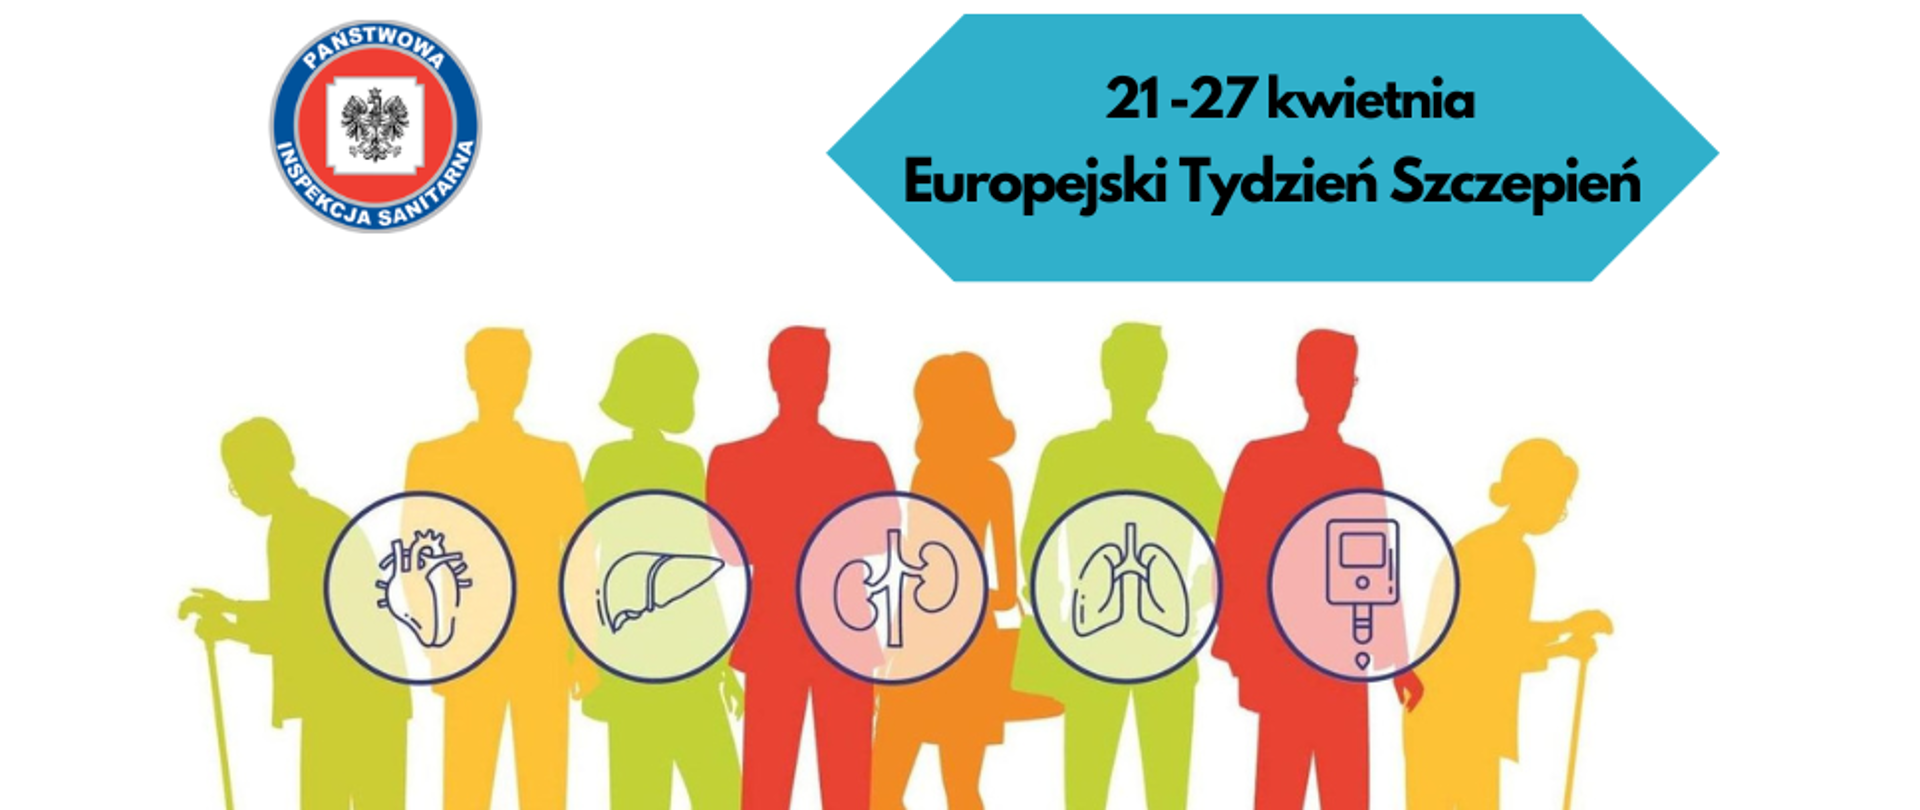 Grafika przestawia kolorowe cienie osób dorosłych z grafikami różnych chorób przewlekłych, oraz napis Europejski Tydzień Szczepień.